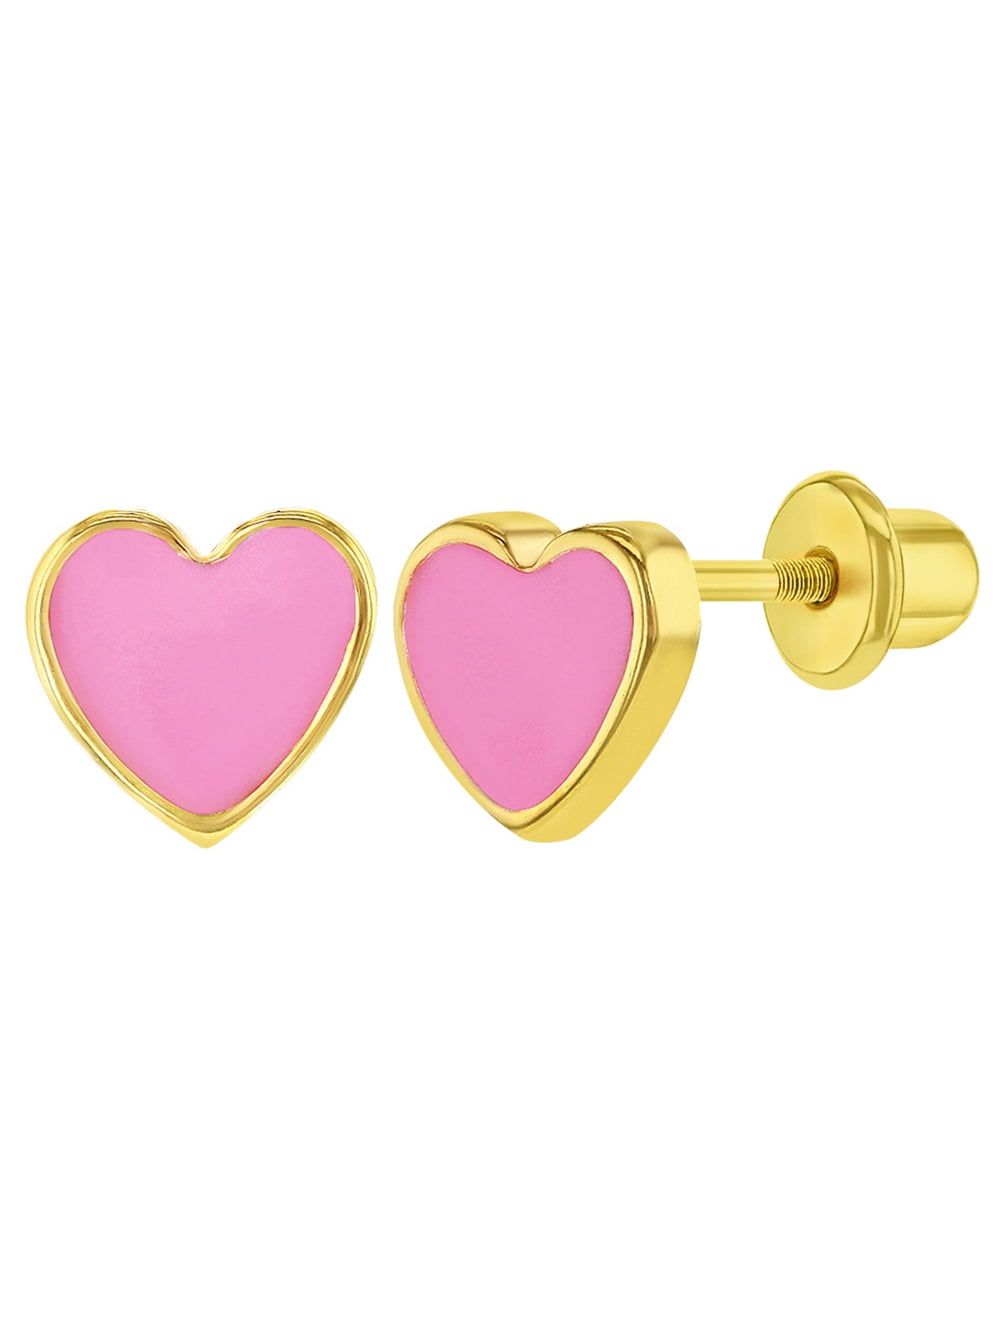 6mm 18KT Yellow Gold Pink & White enamel Heart screwback earrings 